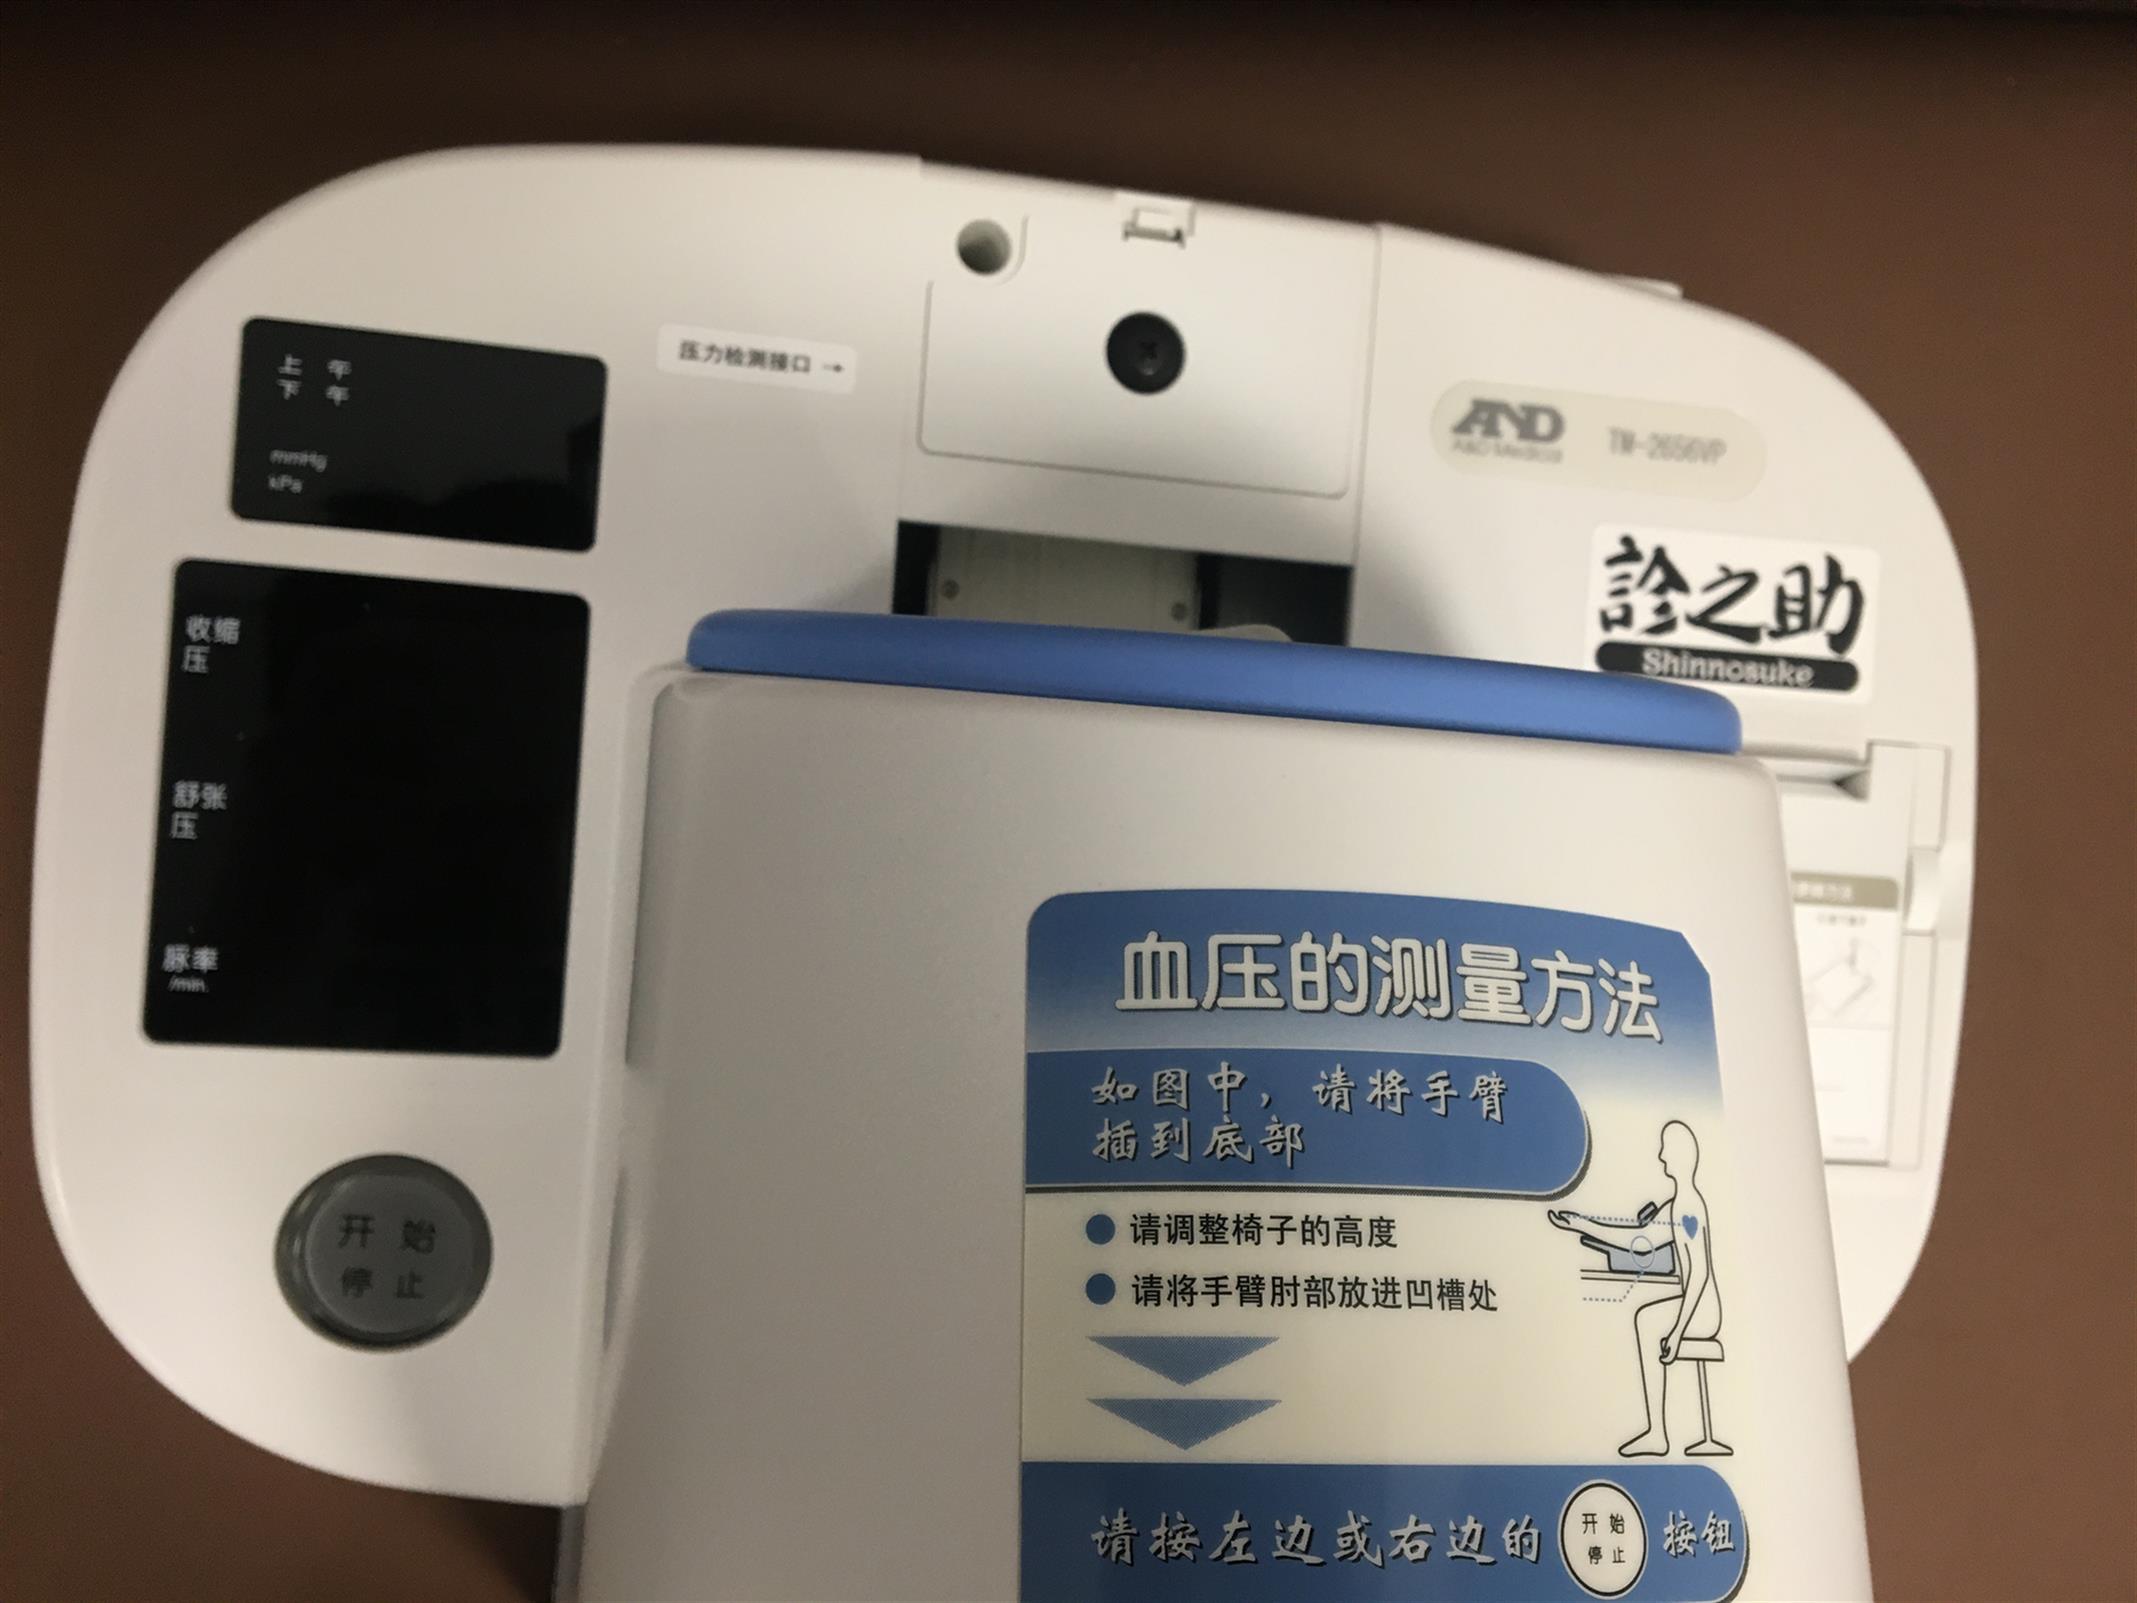 清远TM-2656VP日本AND全自动血压计